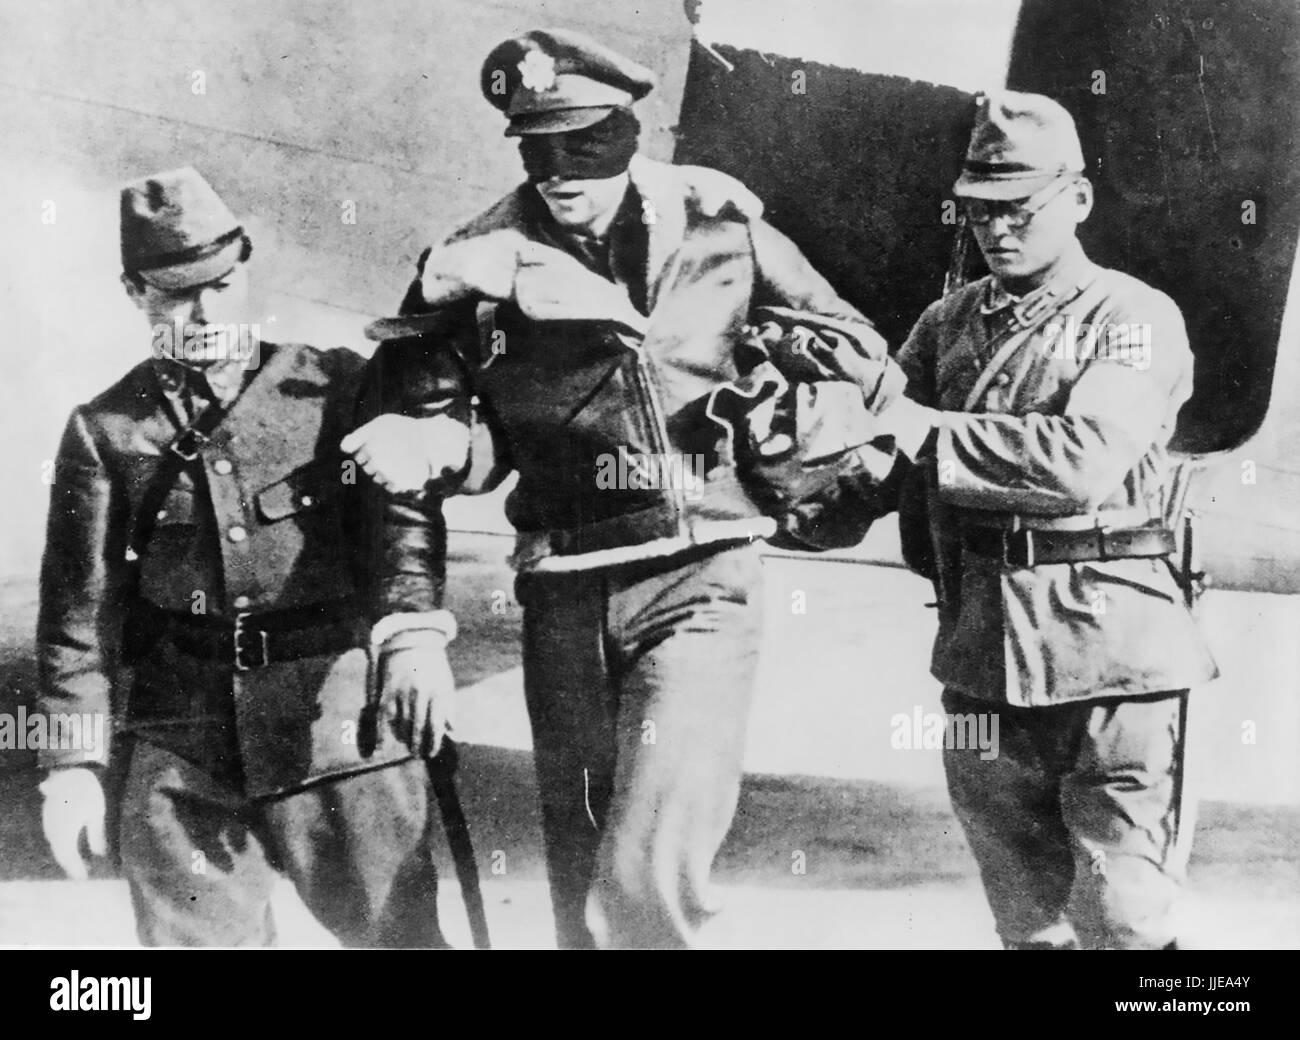 DOOLITTLE RAID auf Tokio 18. April 1942. Erfassten U.S. Army Airforce Lt Robert Hite, Co-Pilot von einer B-25 b vom 34. Bombe Geschwader wird von einem japanischen Flugzeug geführt. Er wurde aus einem Gefängnis in Shanghai am 20. August 1945 befreit. Stockfoto